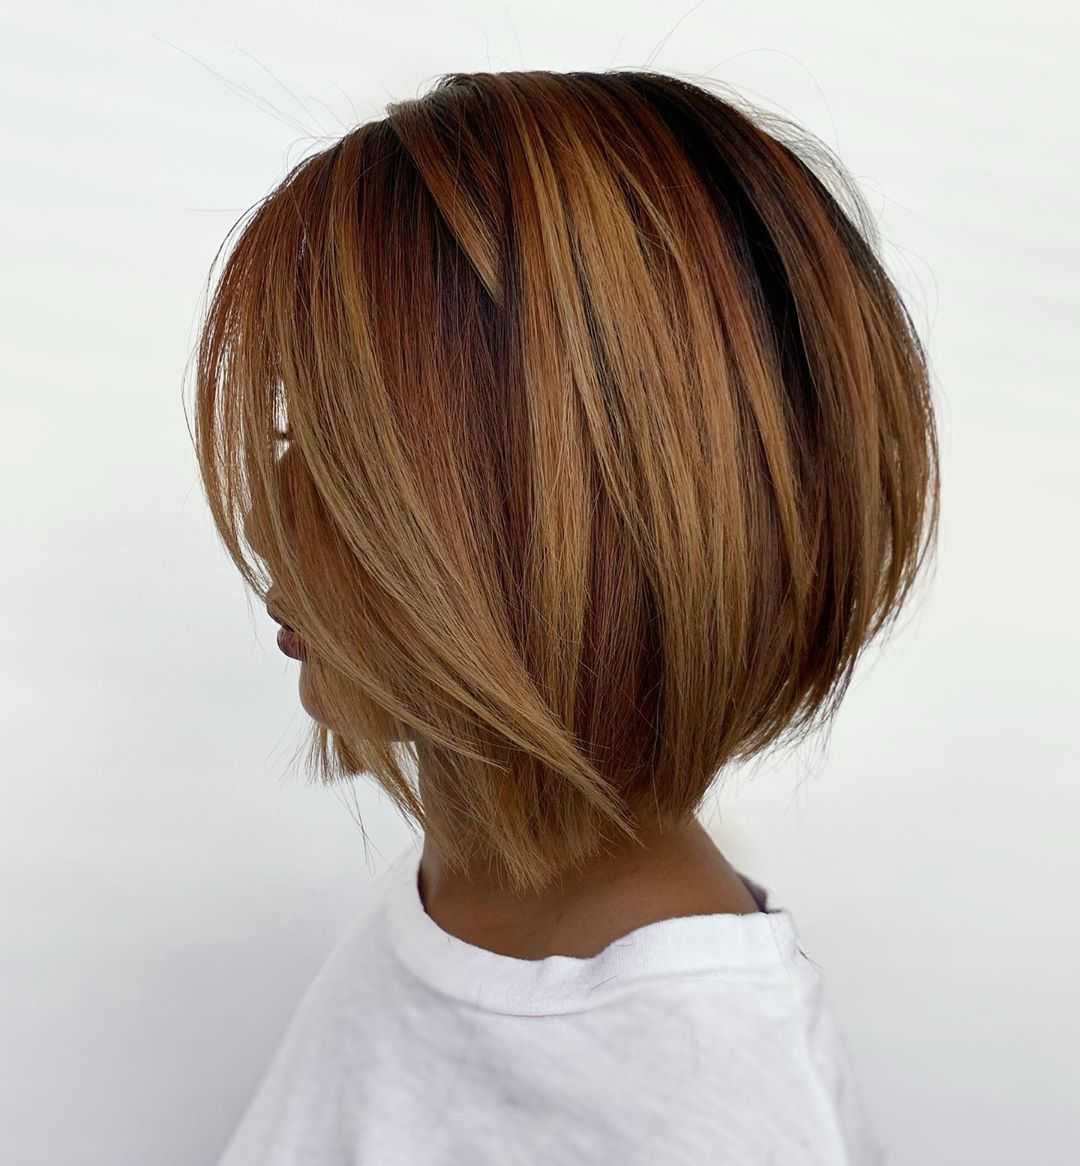 Карамельный цвет волос: фото, оттенки, способы окрашивания, стрижки на короткие, средние и длинные фолосы | lifepodium